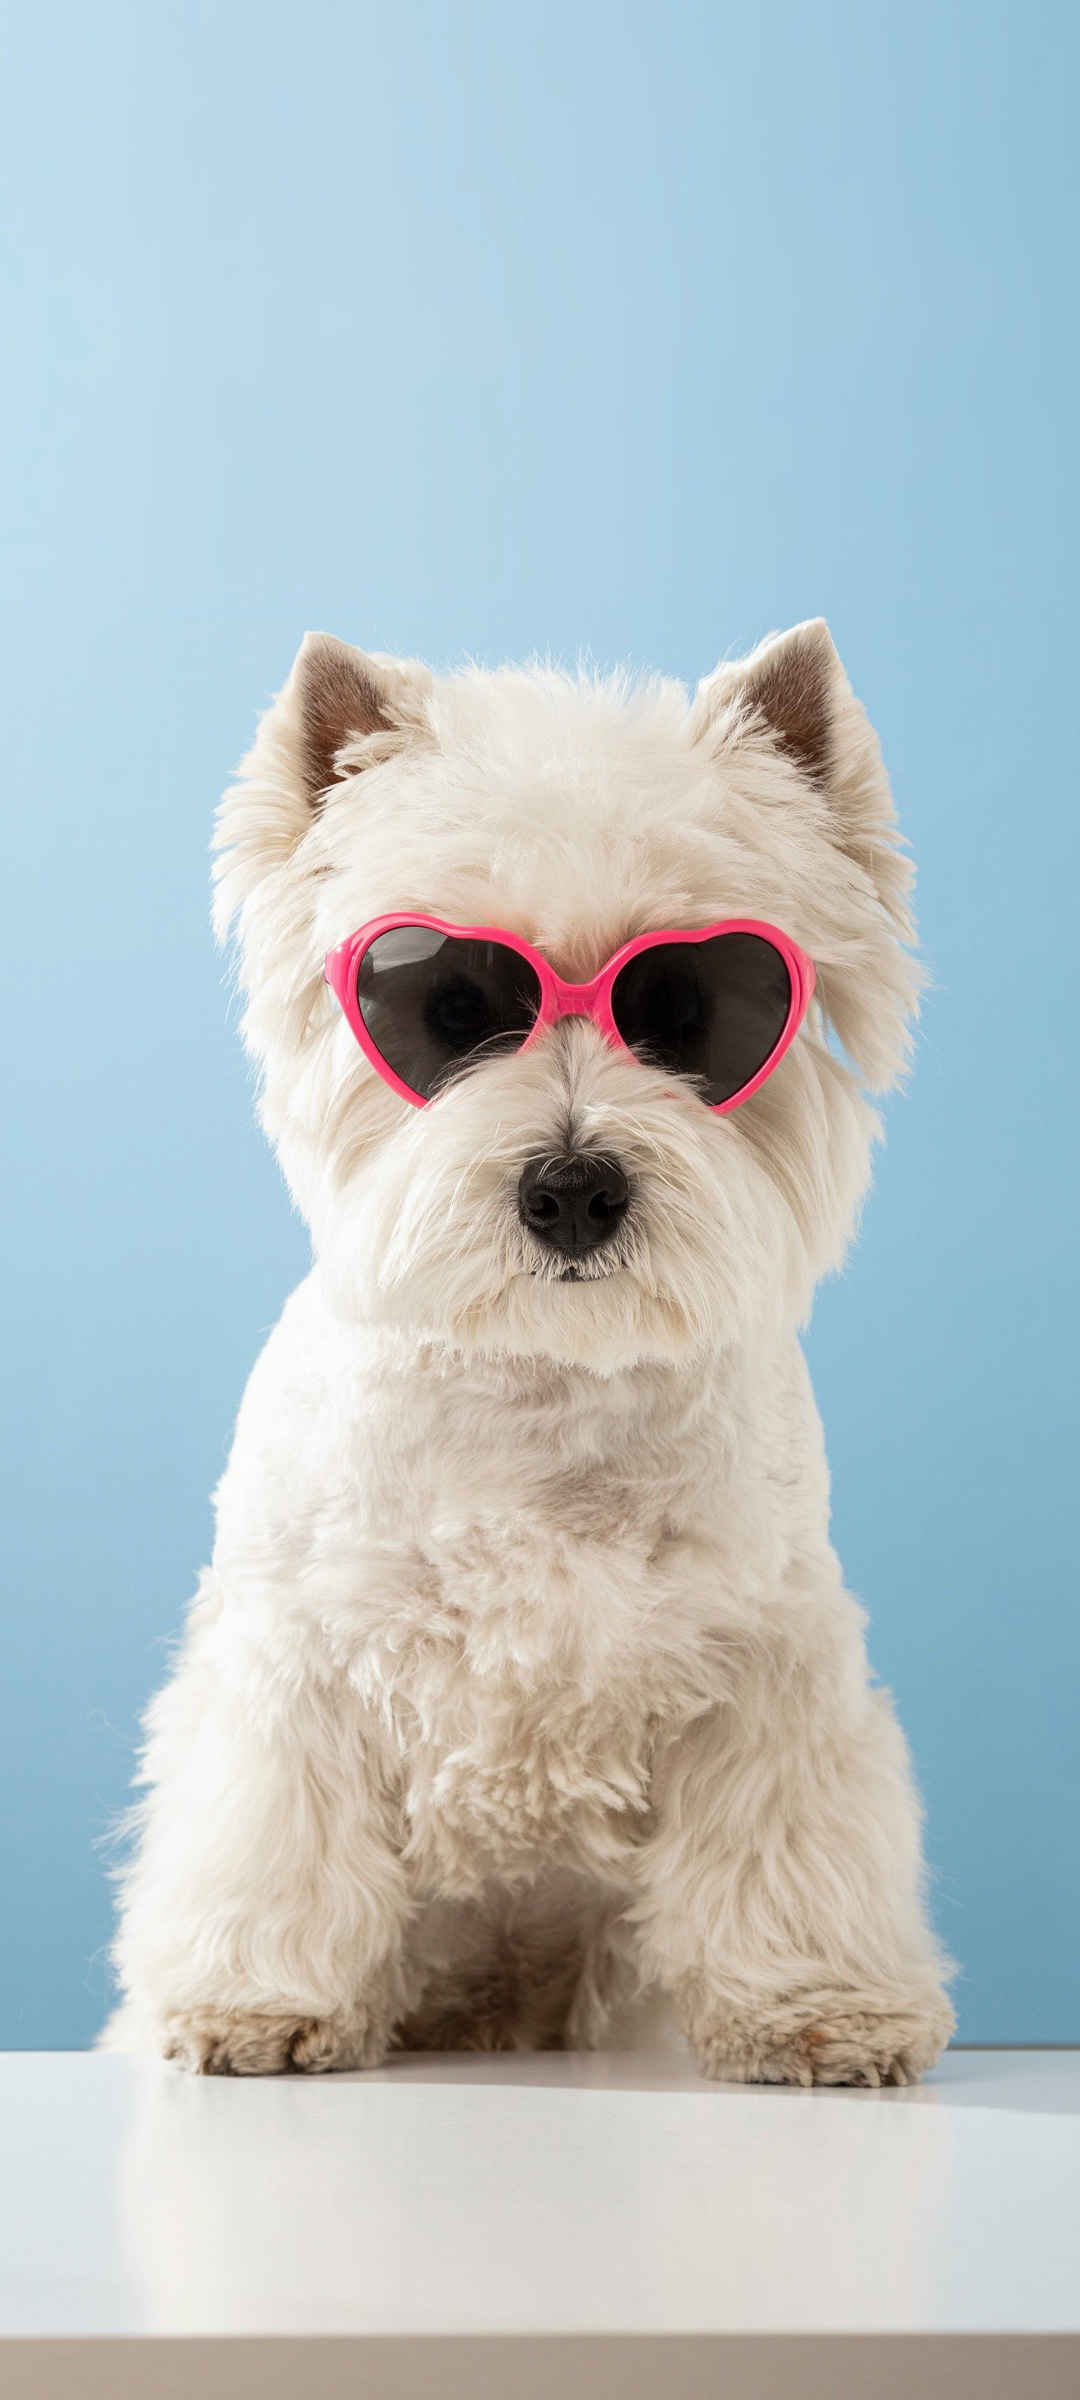 酷狗眼镜动物壁纸图片大全可爱